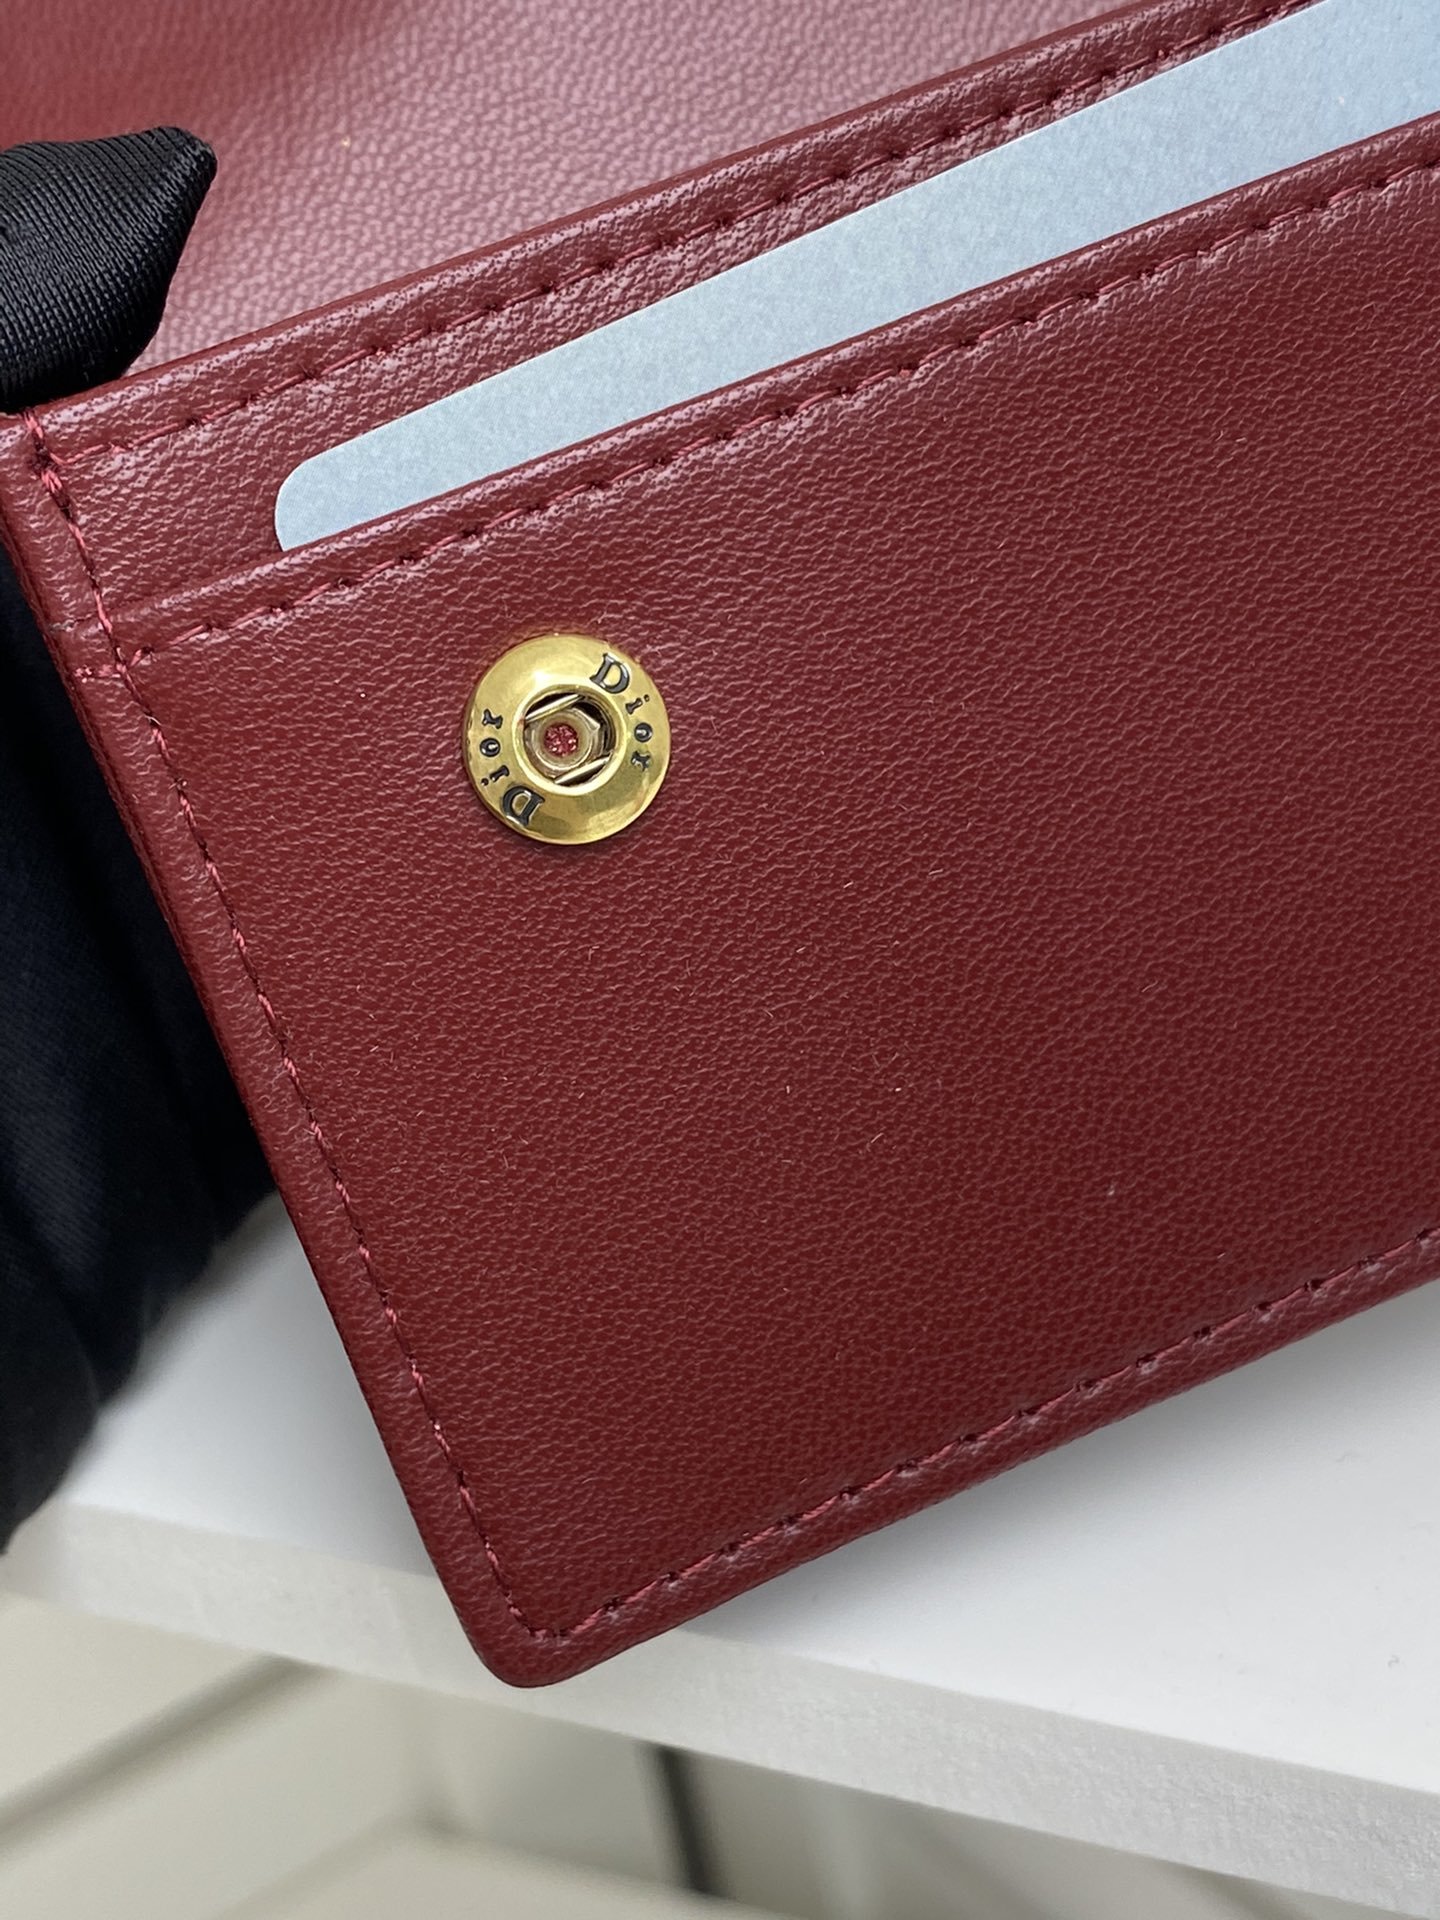 上品でファッションDior クリスチャンディオール財布 実物の写真スーパーコピー財布代引き可能国内発送後払い安全必ず届く信用できるサイト